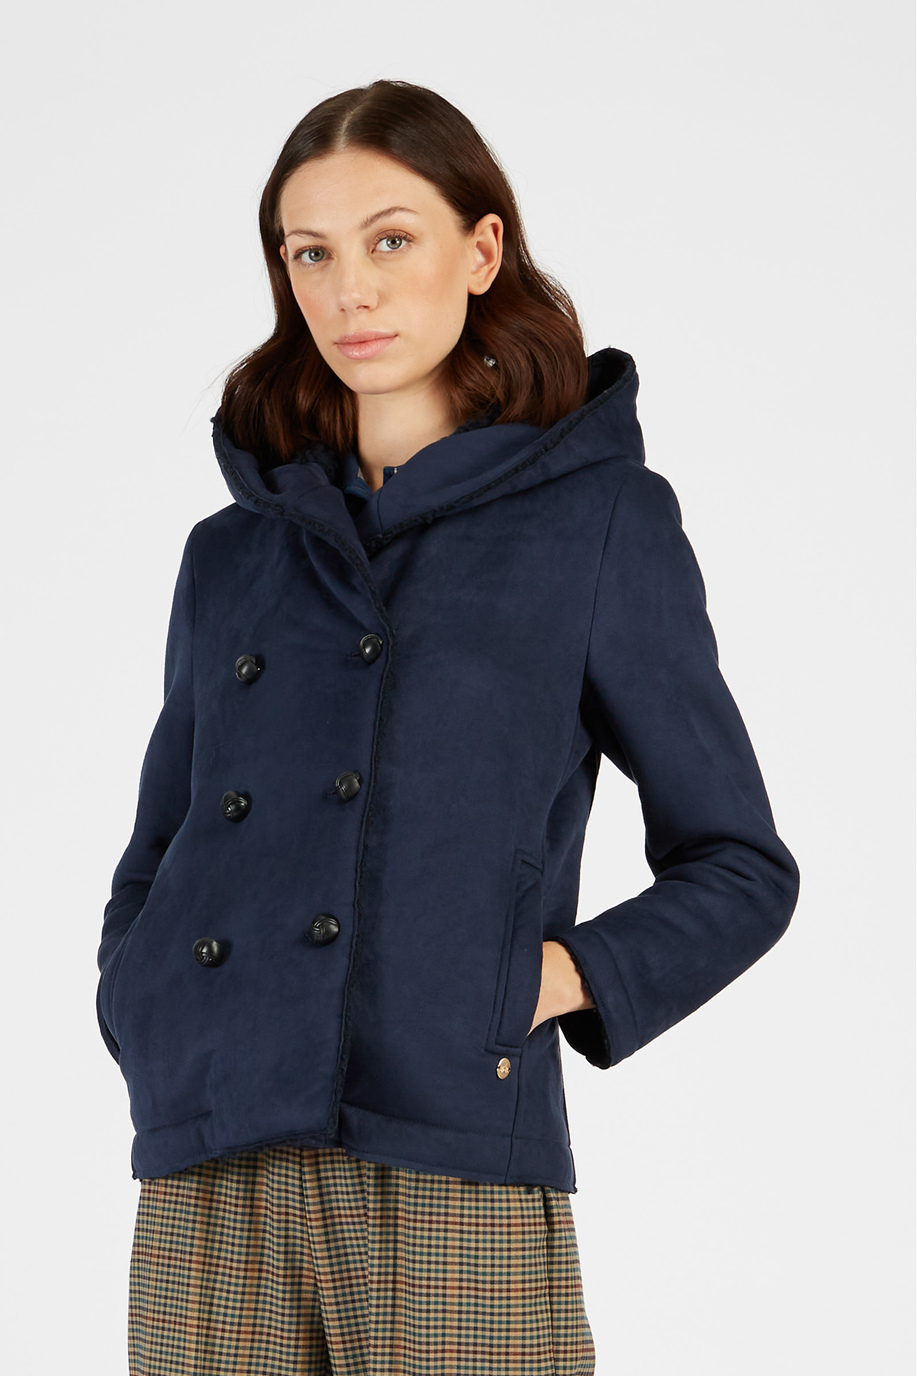 Damen-Jacke mit Samteffekt und Knöpfen - Outdoor | La Martina - Official Online Shop